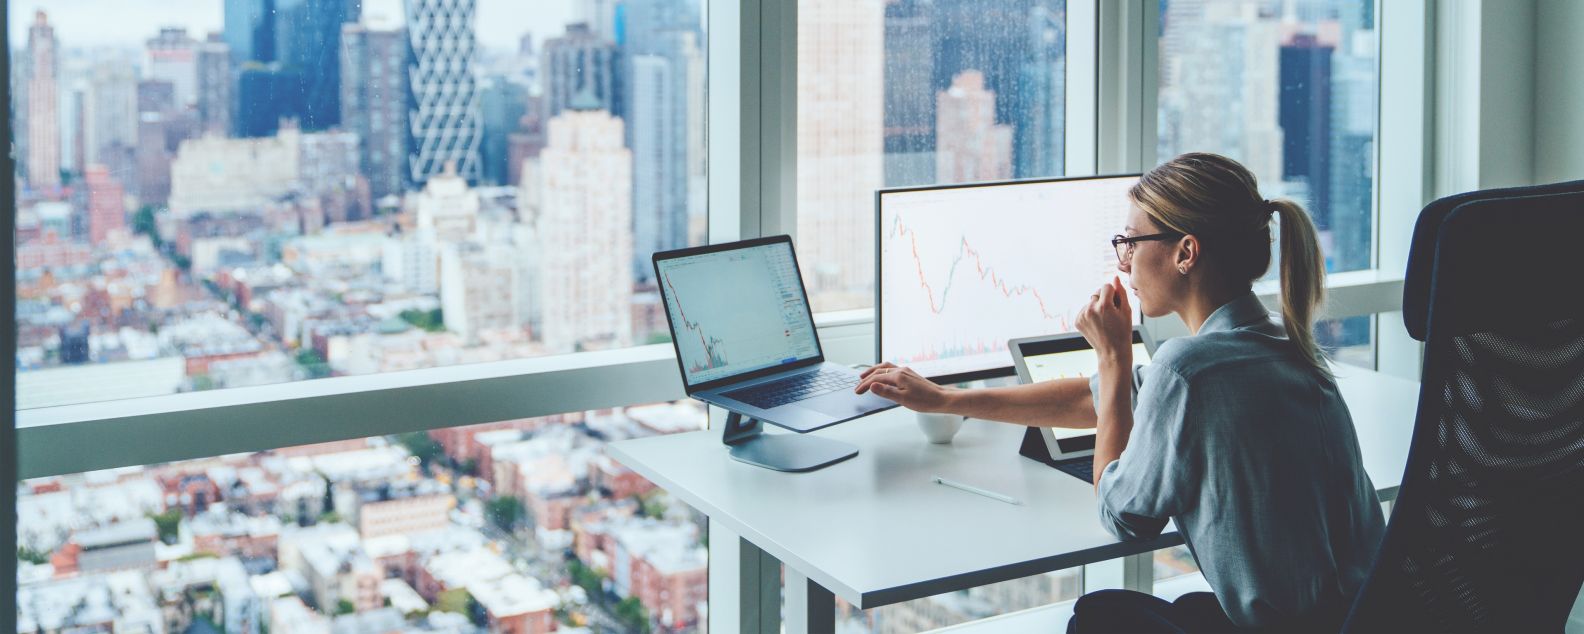 모니터에 금융 그래프와 통계가 있으며 파노라마 뷰의 고층 건물 사무실 데스크톱 컴퓨터 앞에 앉아 있는 사람의 뒷모습